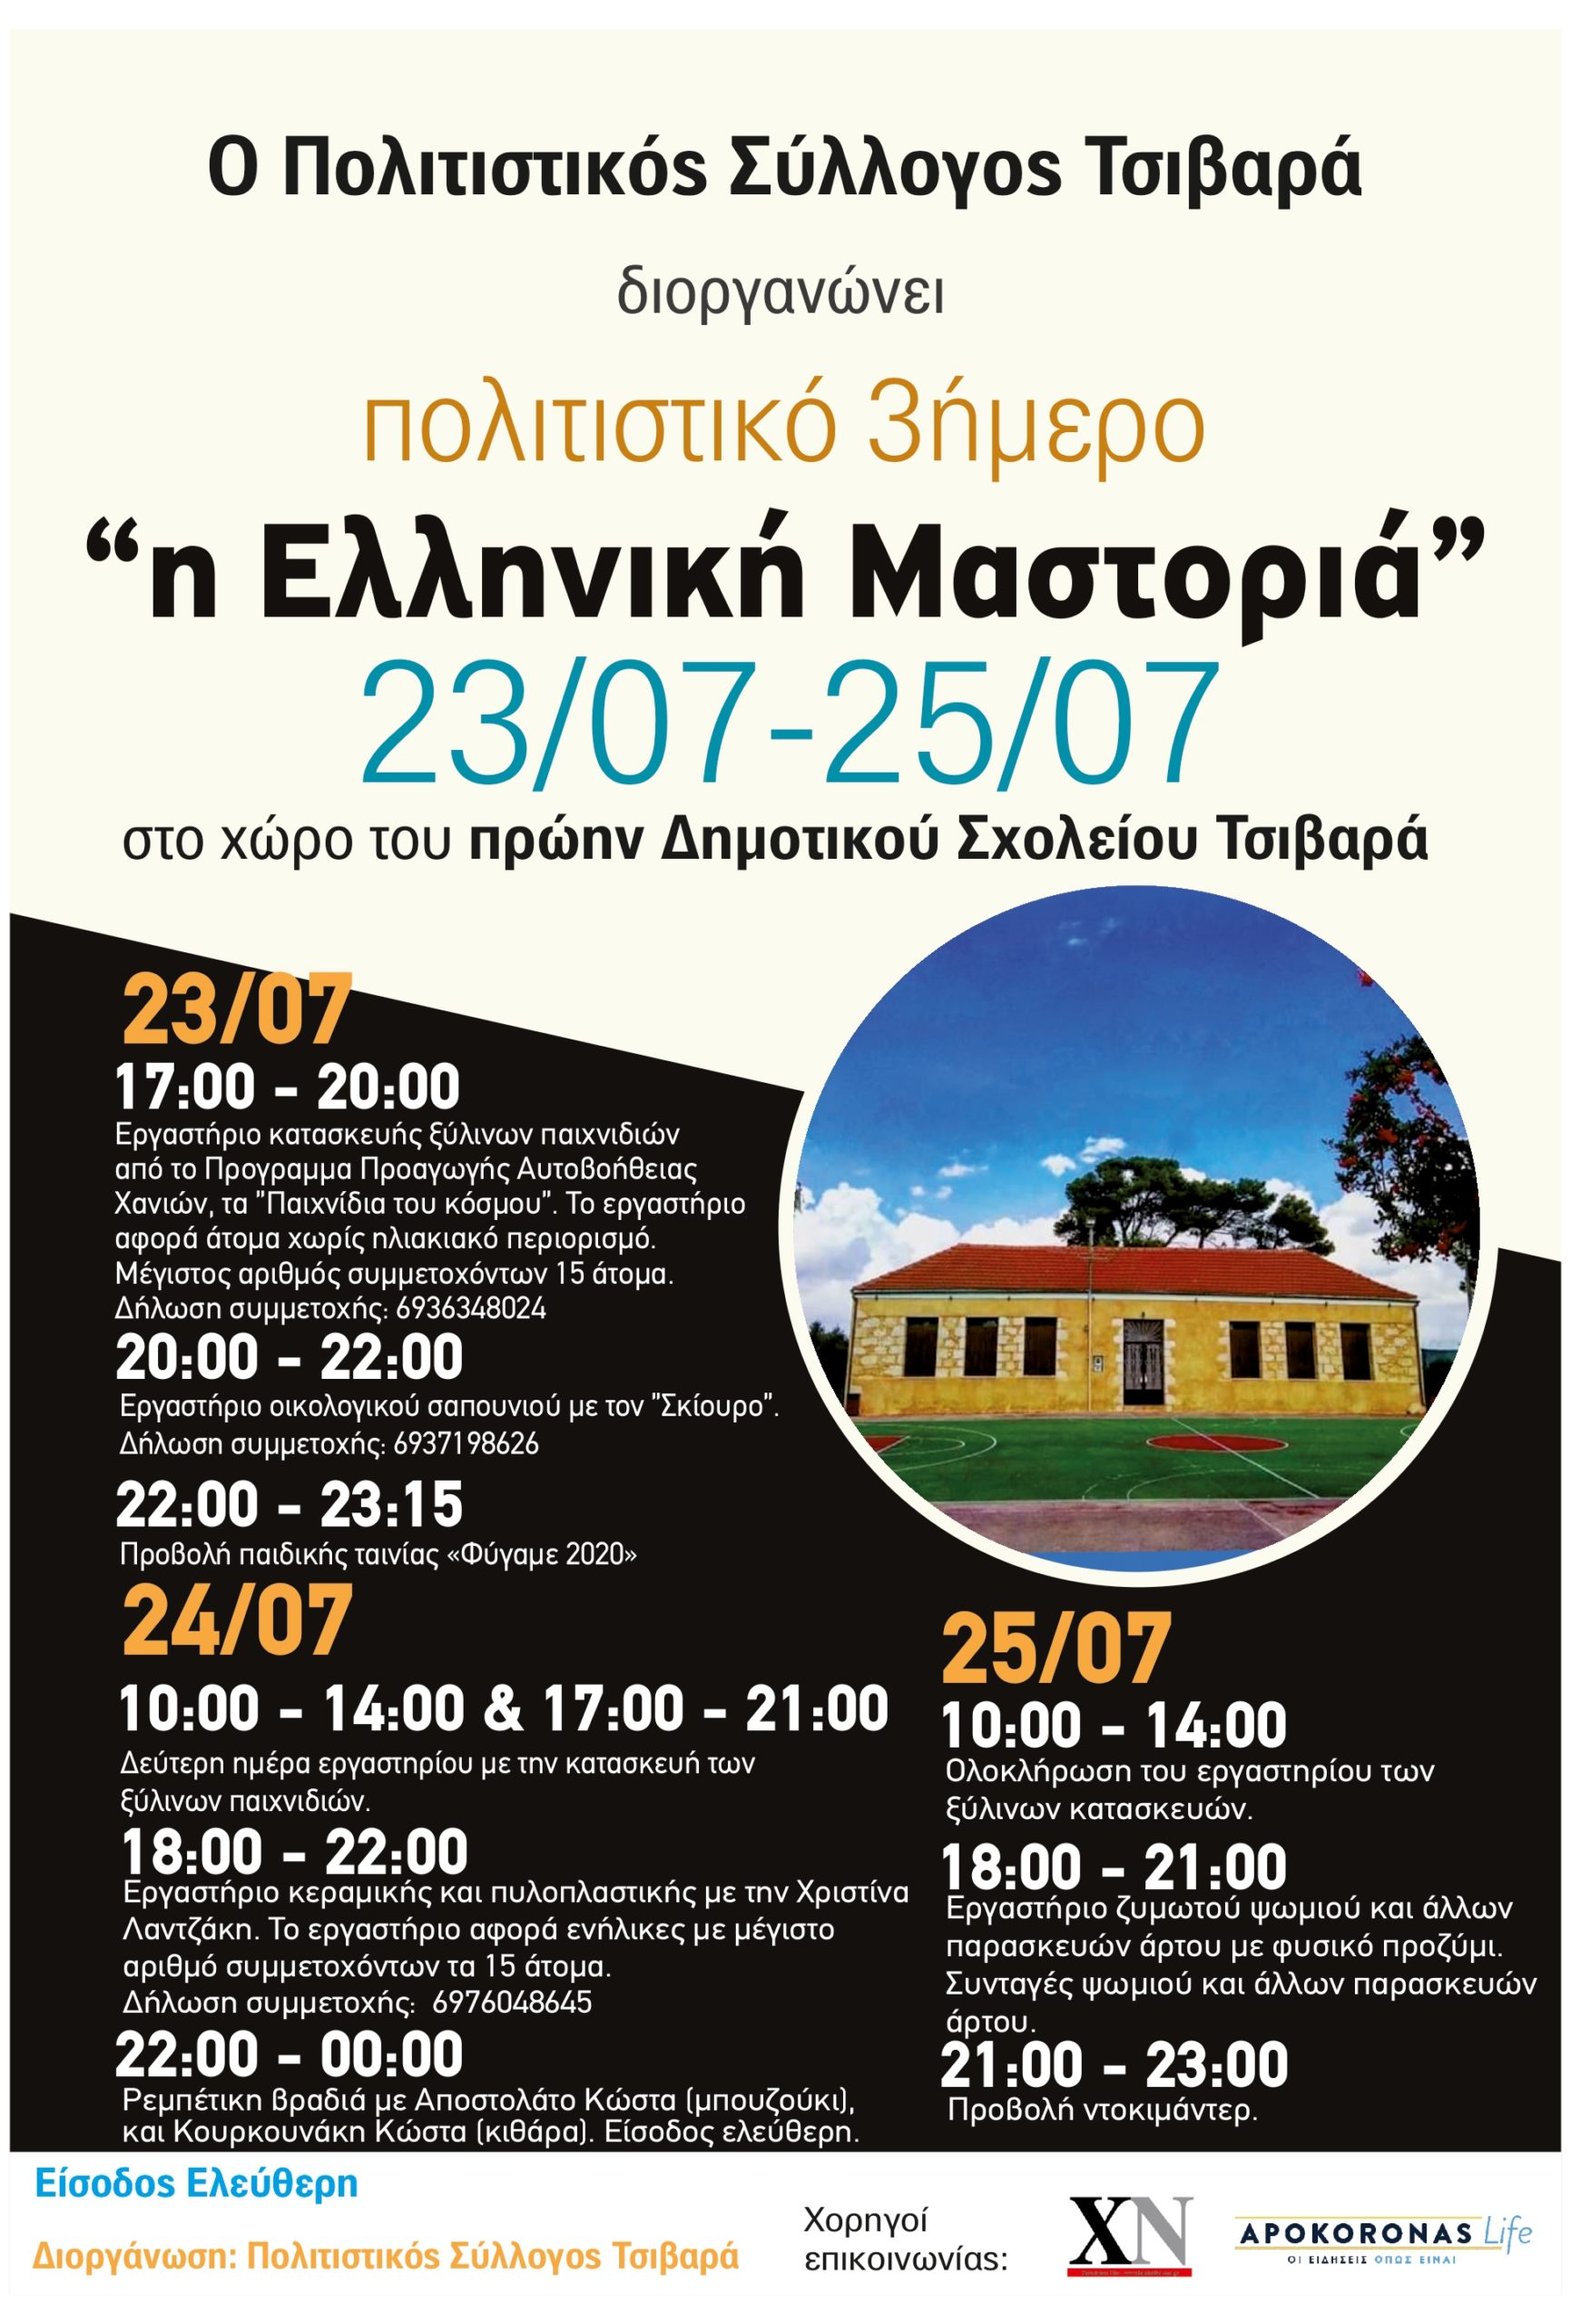 Συμμετοχή στο πολιτιστικό 3ήμερο “η Ελληνική Μαστοριά” στα Χανιά